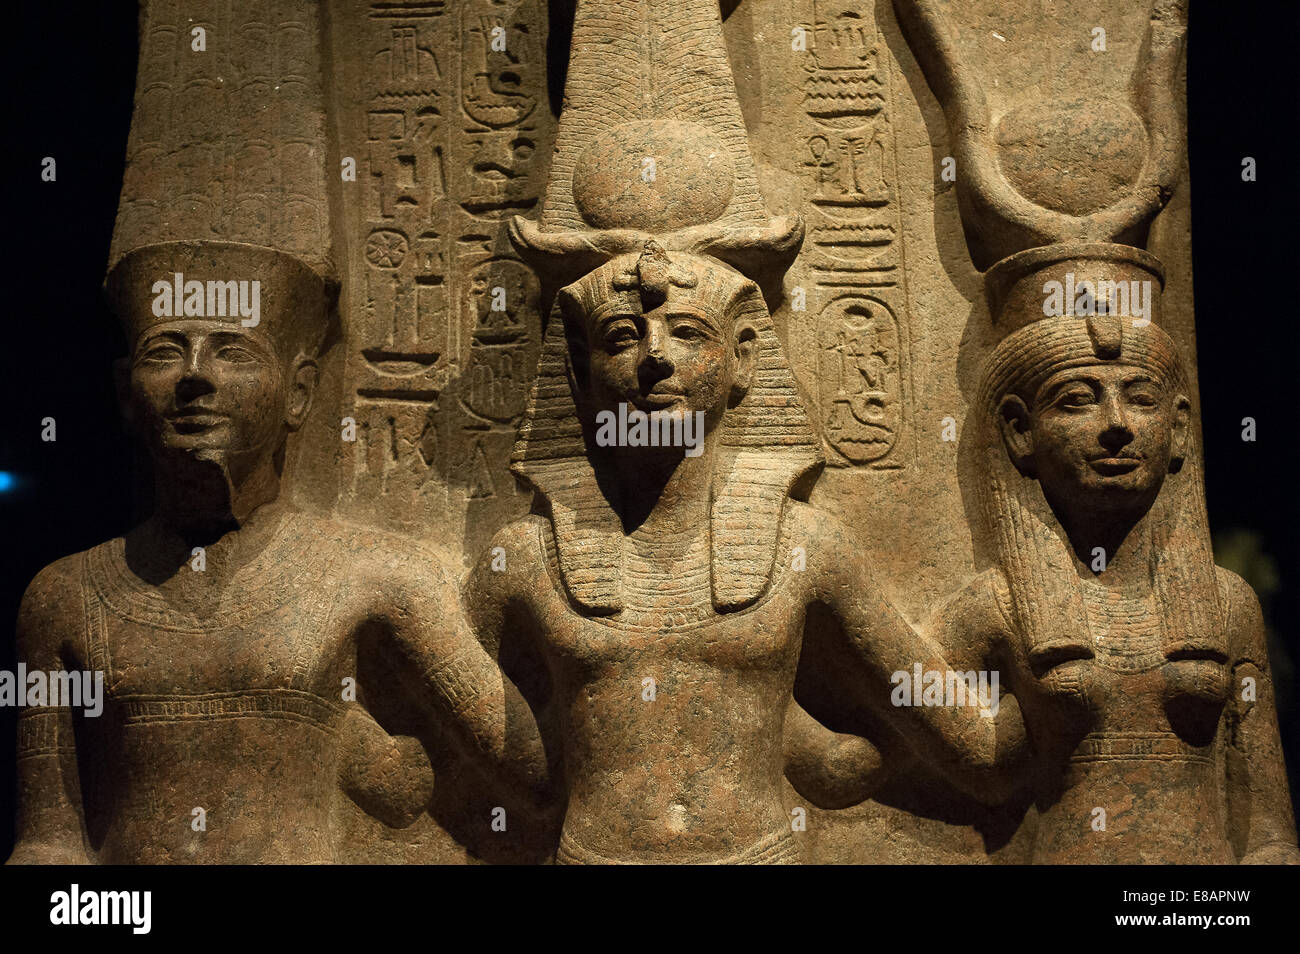 Museo Egipcio de Turín Piamonte Italia estatuas del Rey Ramsés II con el dios Amón y la Diosa Mut Foto de stock